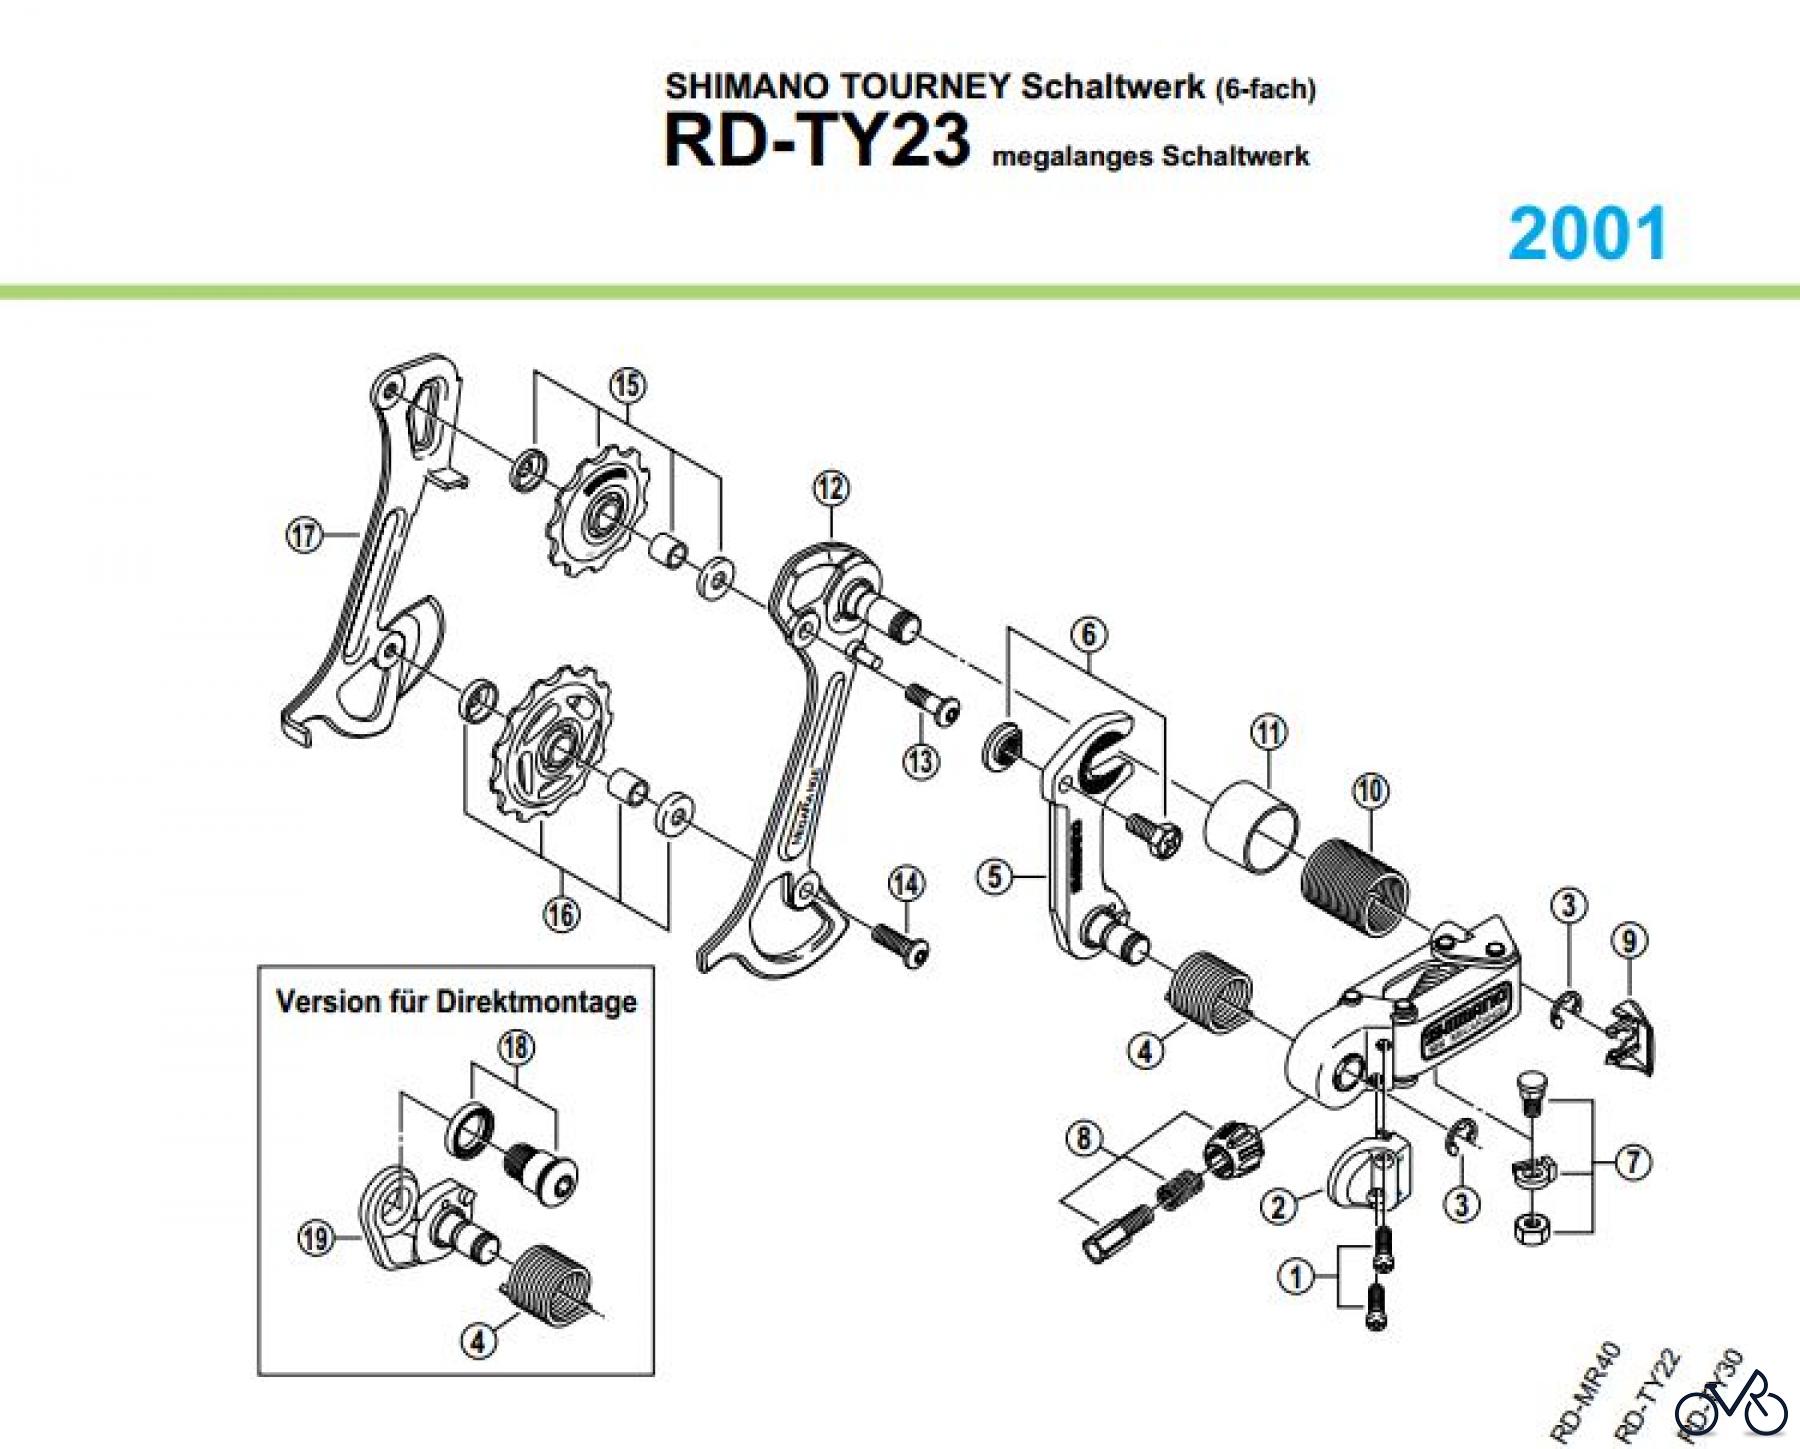  Shimano RD Rear Derailleur - Schaltwerk RD-TY23-01